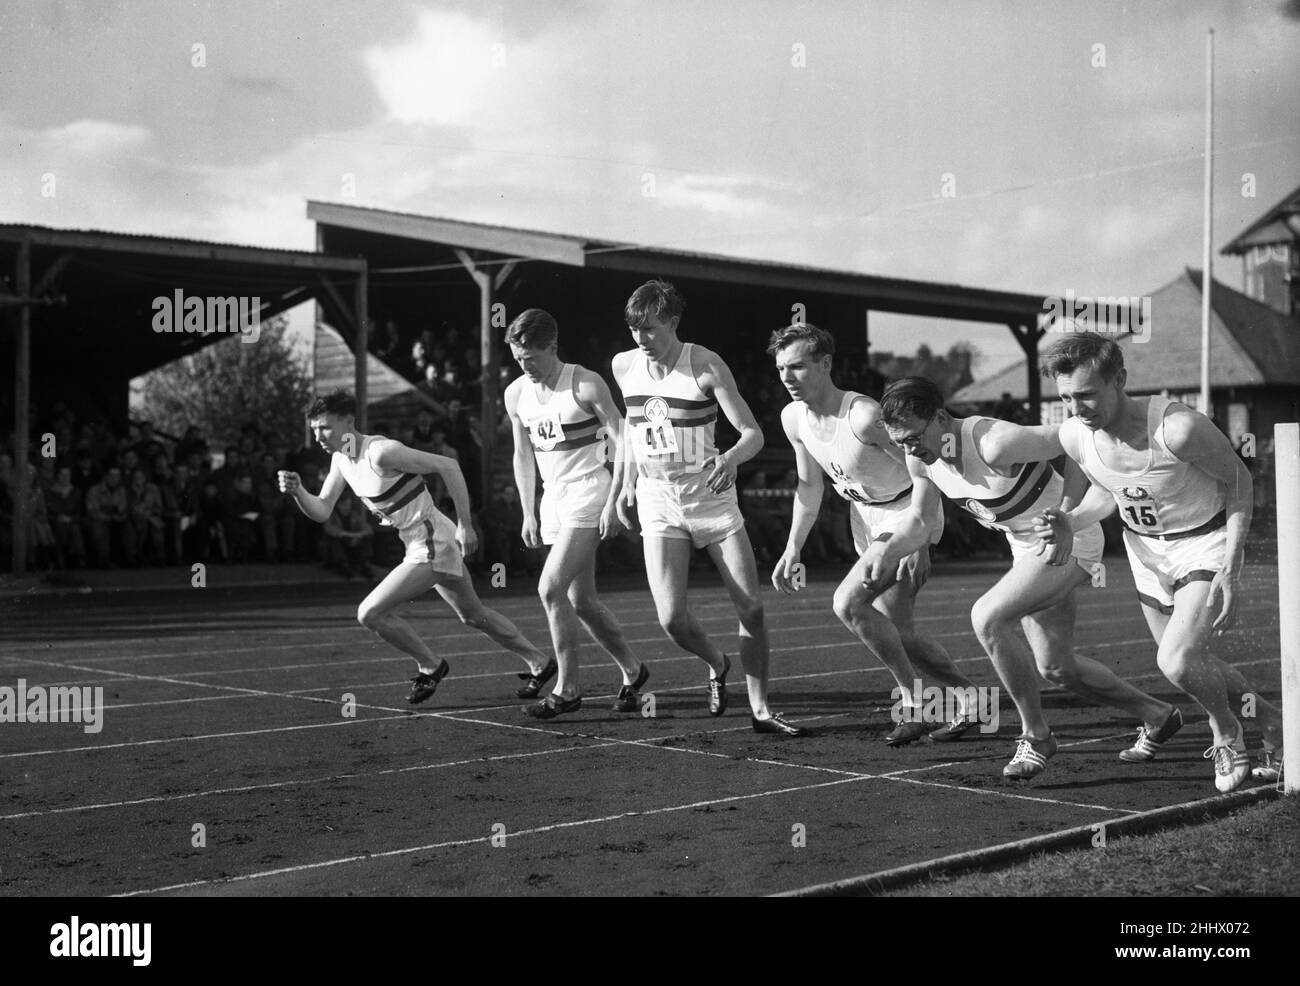 Roger Banister, britischer Athlet, fährt am Donnerstag, den 6th. Mai 1954, die erste Strecke unter 4 Minuten auf der Iffley Road Track in Oxford. Die genaue Zeit betrug 3 Minuten 59,4 Sekunden. Unser Bild zeigt Athleten beim Start des Rennens, Roger Banister Nr. 41. Stockfoto